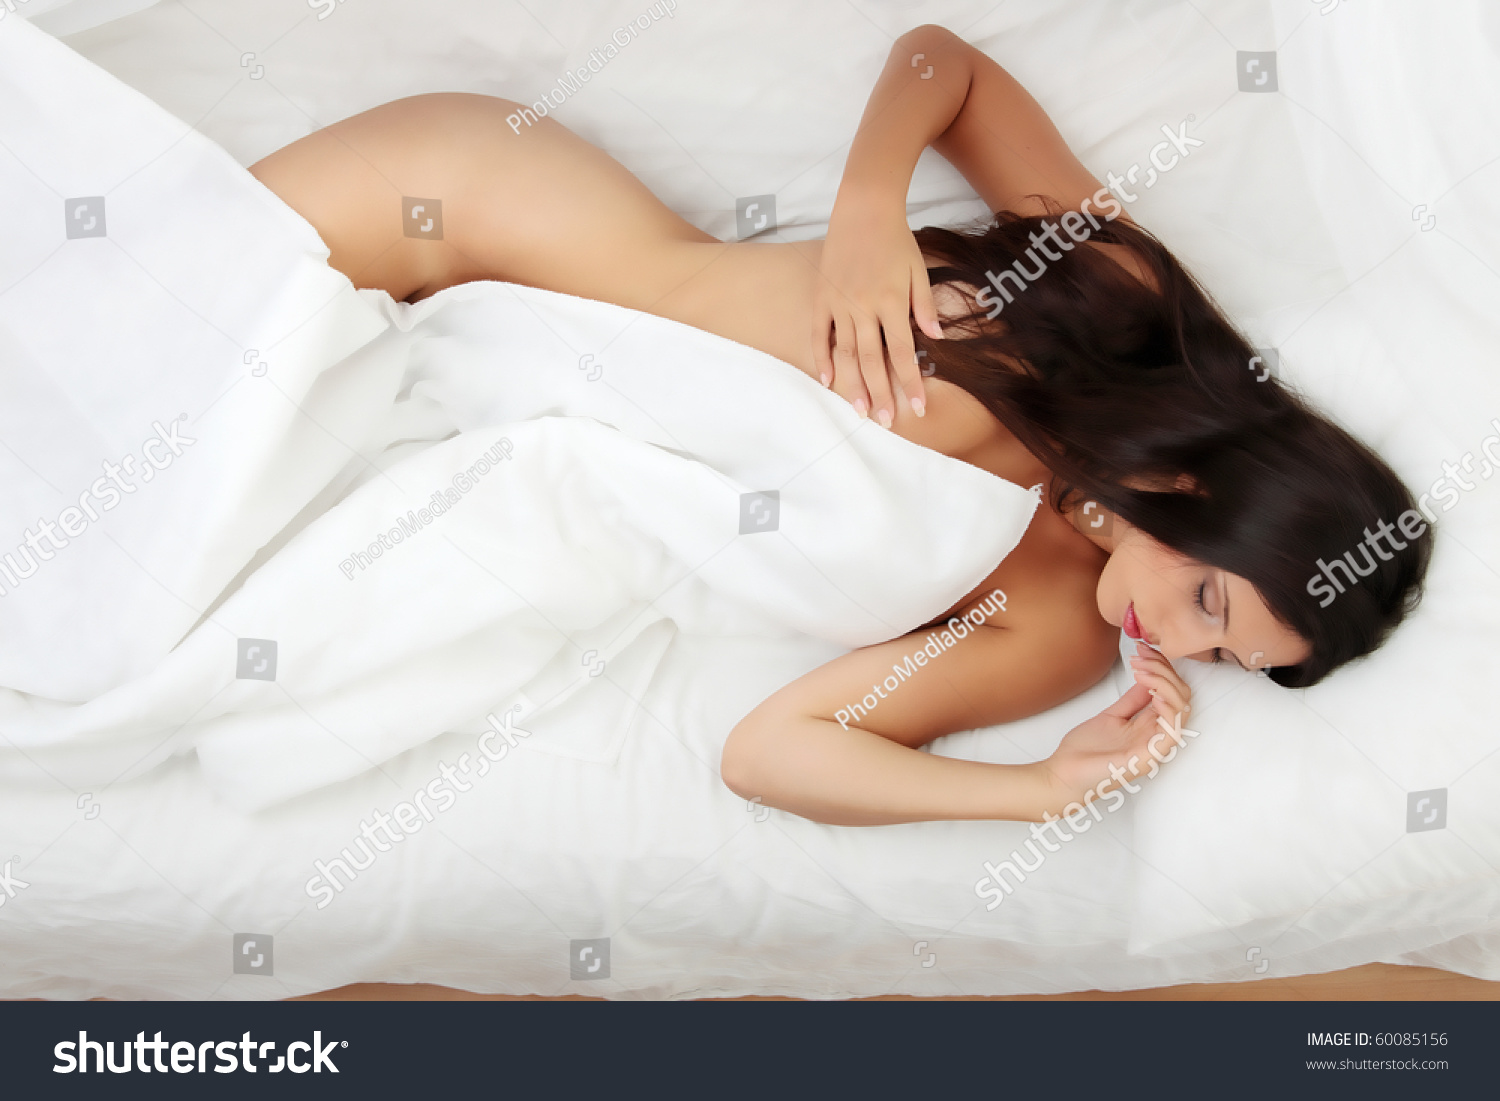 Взрослая испанская женщина на кровати раздвинула ноги для молодого голодного самца